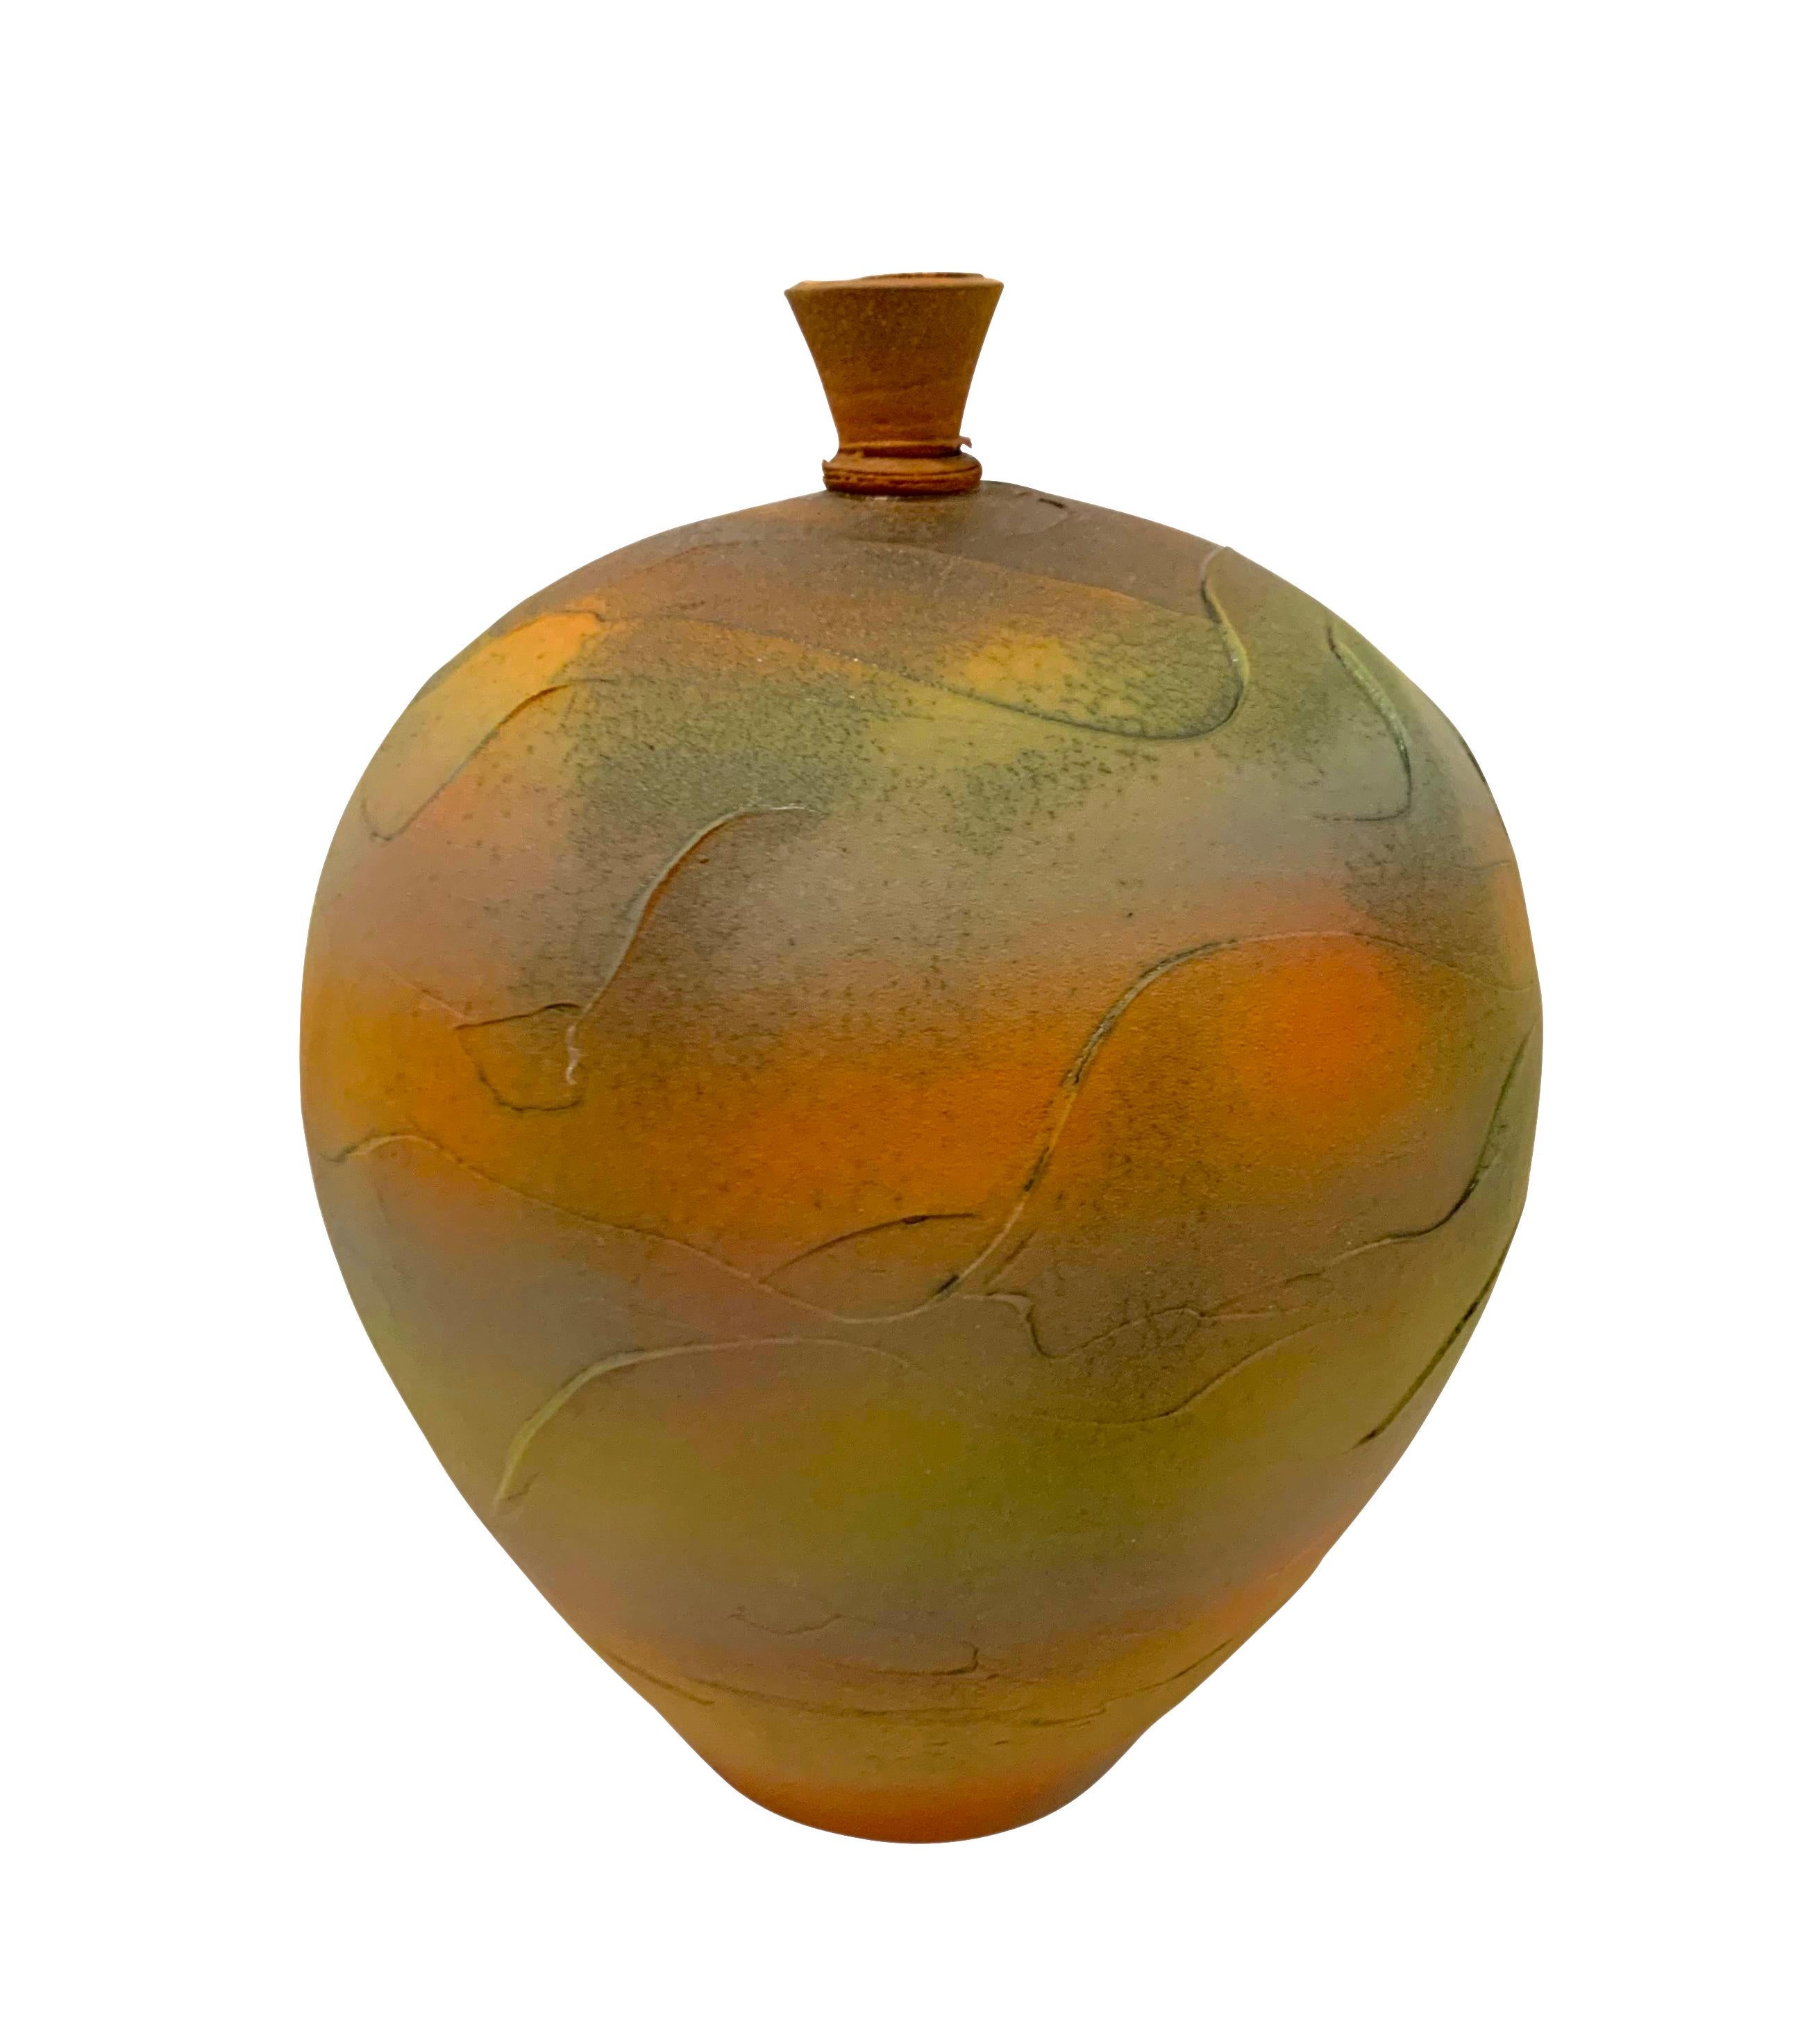 Handgefertigt in den Vereinigten Staaten, eine moderne strukturierte Keramikvase mit kleinem Deckel.
Strukturierte mehrfarbige orange, gelbe und weiße matte Glasur.
Ein Unikat.